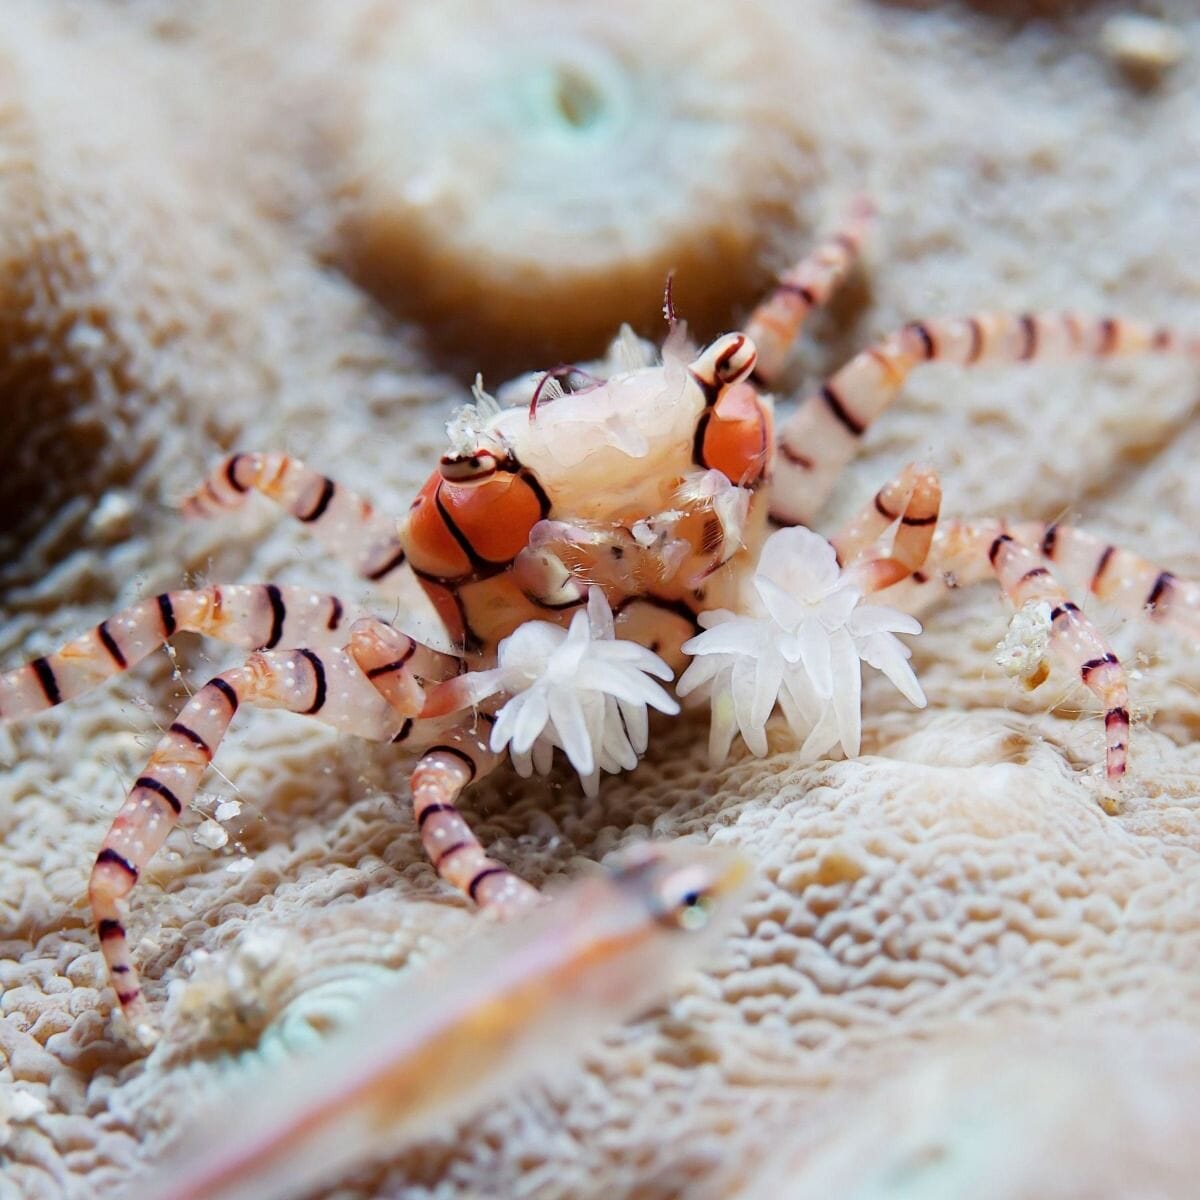 Pompom Crab Lybia Sp Kraken Corals